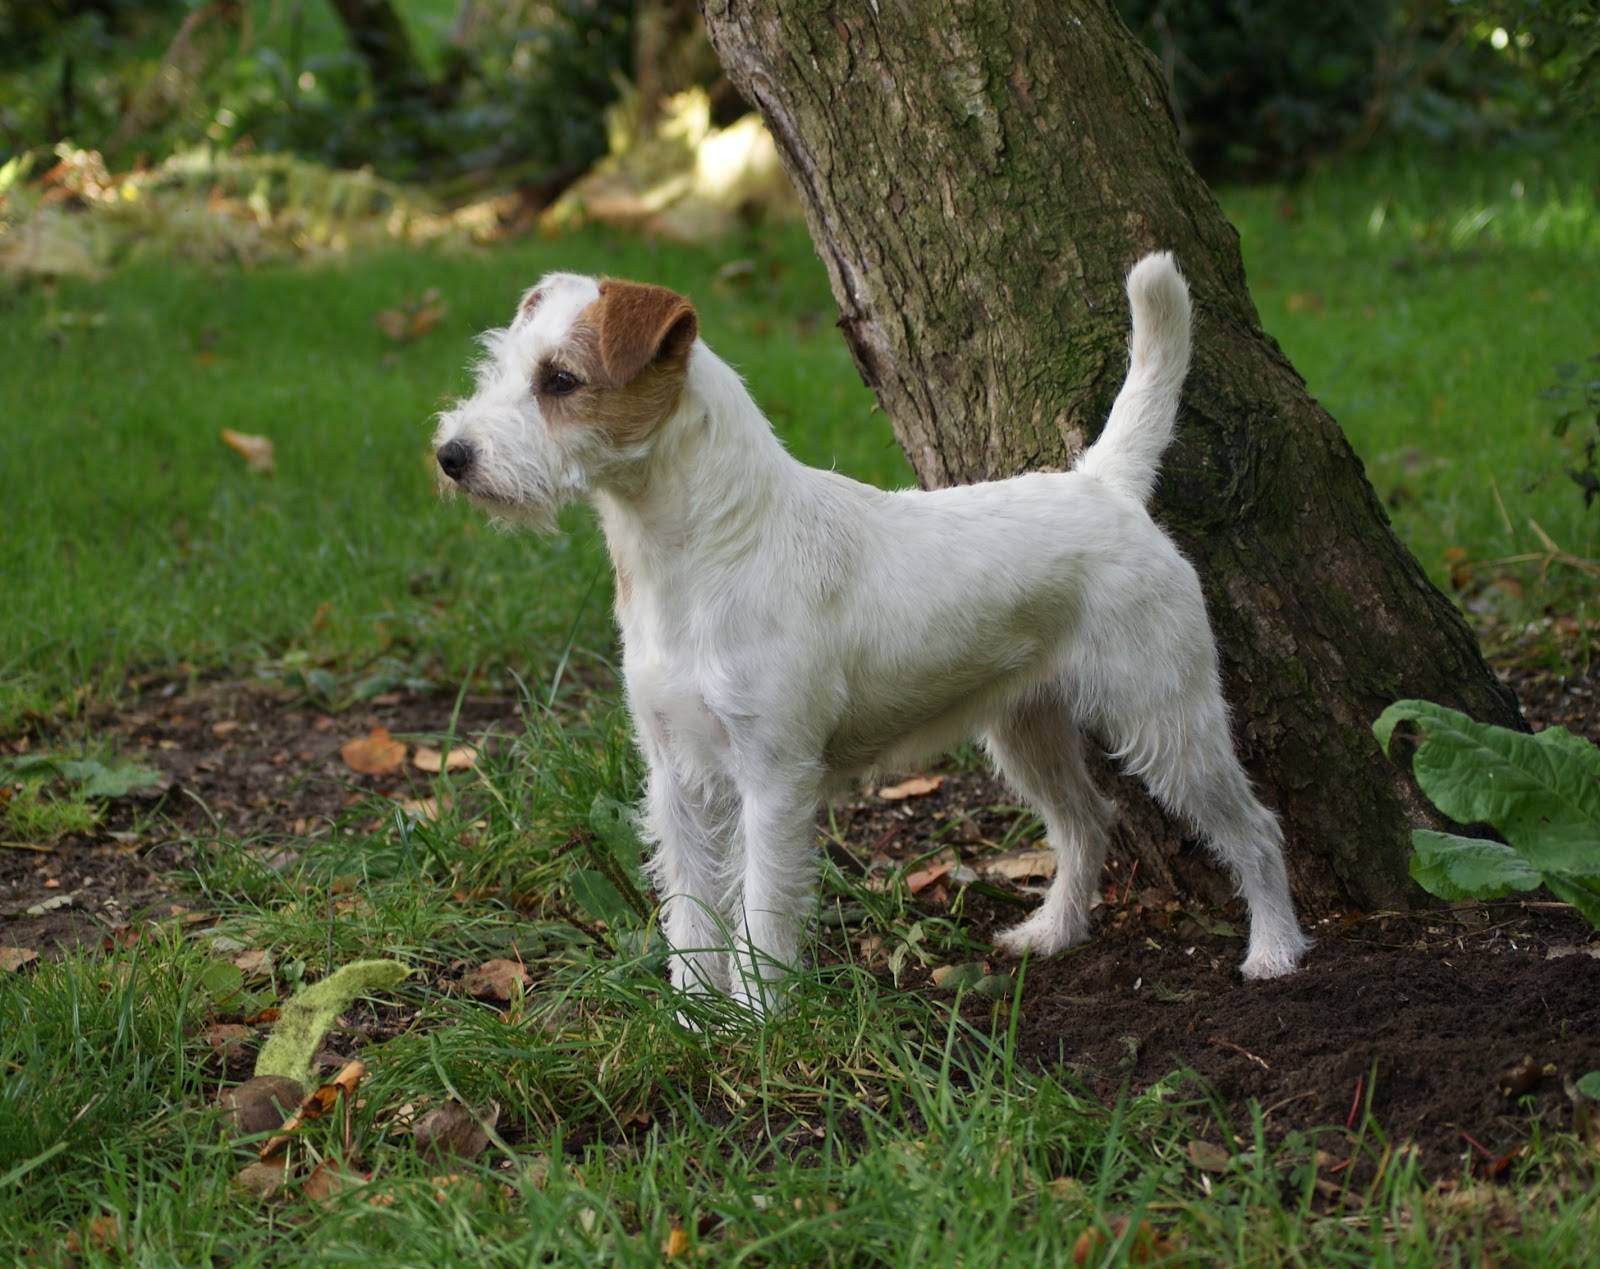 Порода собак парсон рассел терьер — энергичная, выносливая и бесстрашная порода